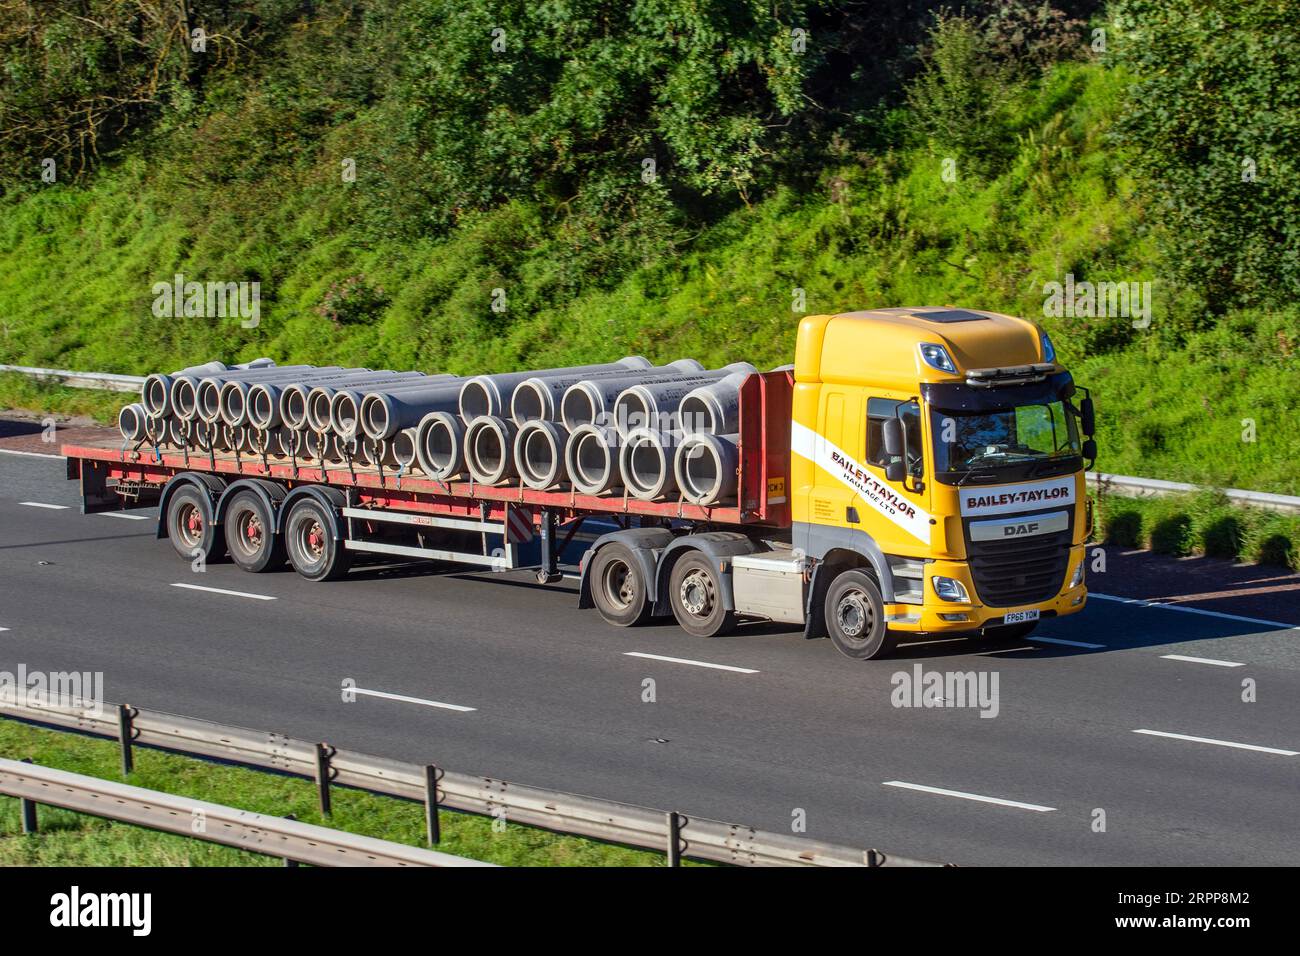 Bailey Taylor Haulage Trucking Company, exploitant les systèmes de drainage en béton préfabriqué Staton. 2016 DAF CF ; voyageant à grande vitesse sur l'autoroute M6 dans le Grand Manchester, Royaume-Uni Banque D'Images